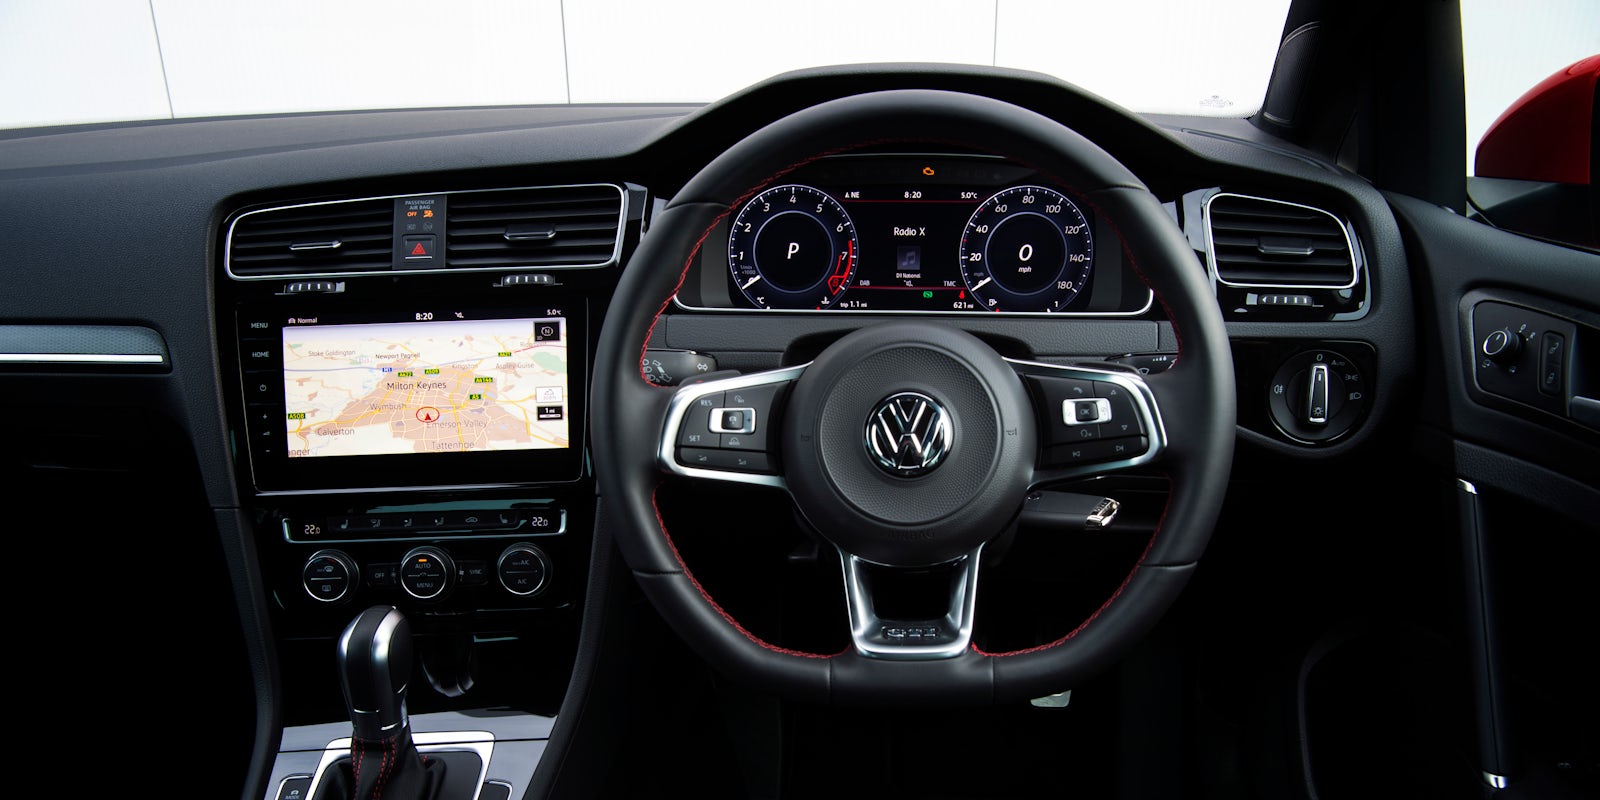 Volk Wagon Volkswagen Golf Gti 2018 Interior